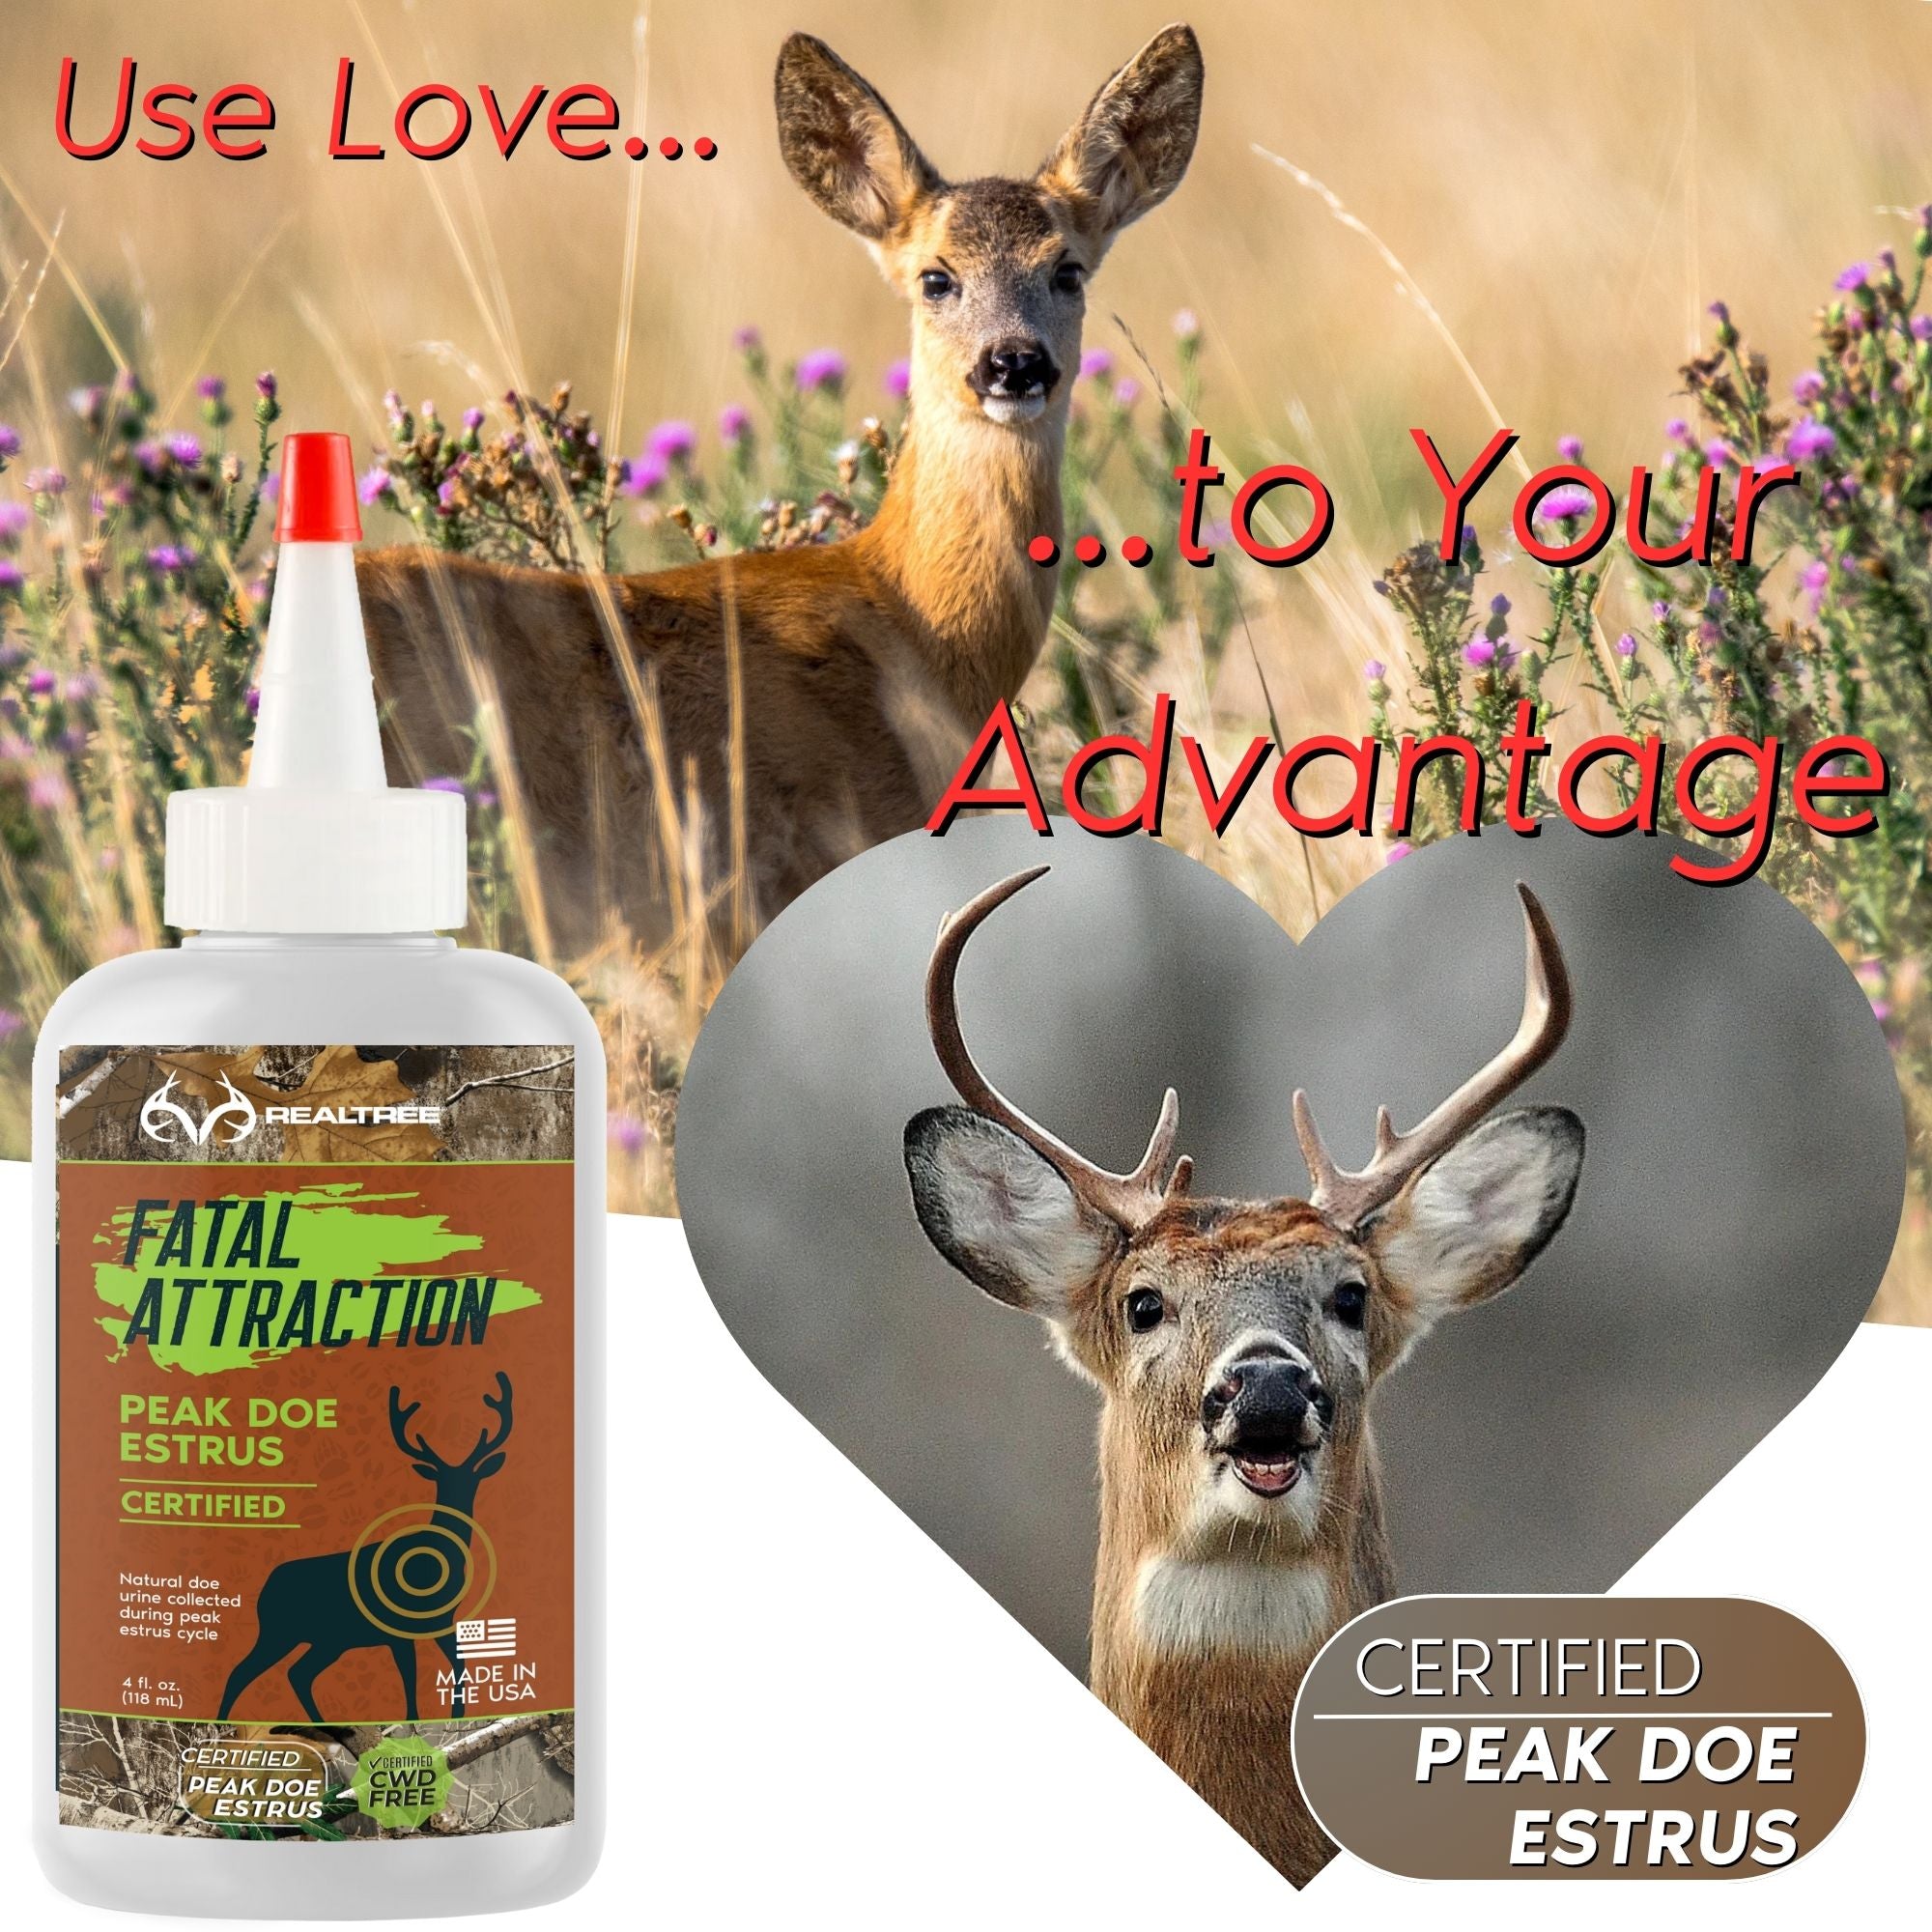 Deer Attractant; Realtree Fatal Attraction Deer Attractant Peak Doe Estrus